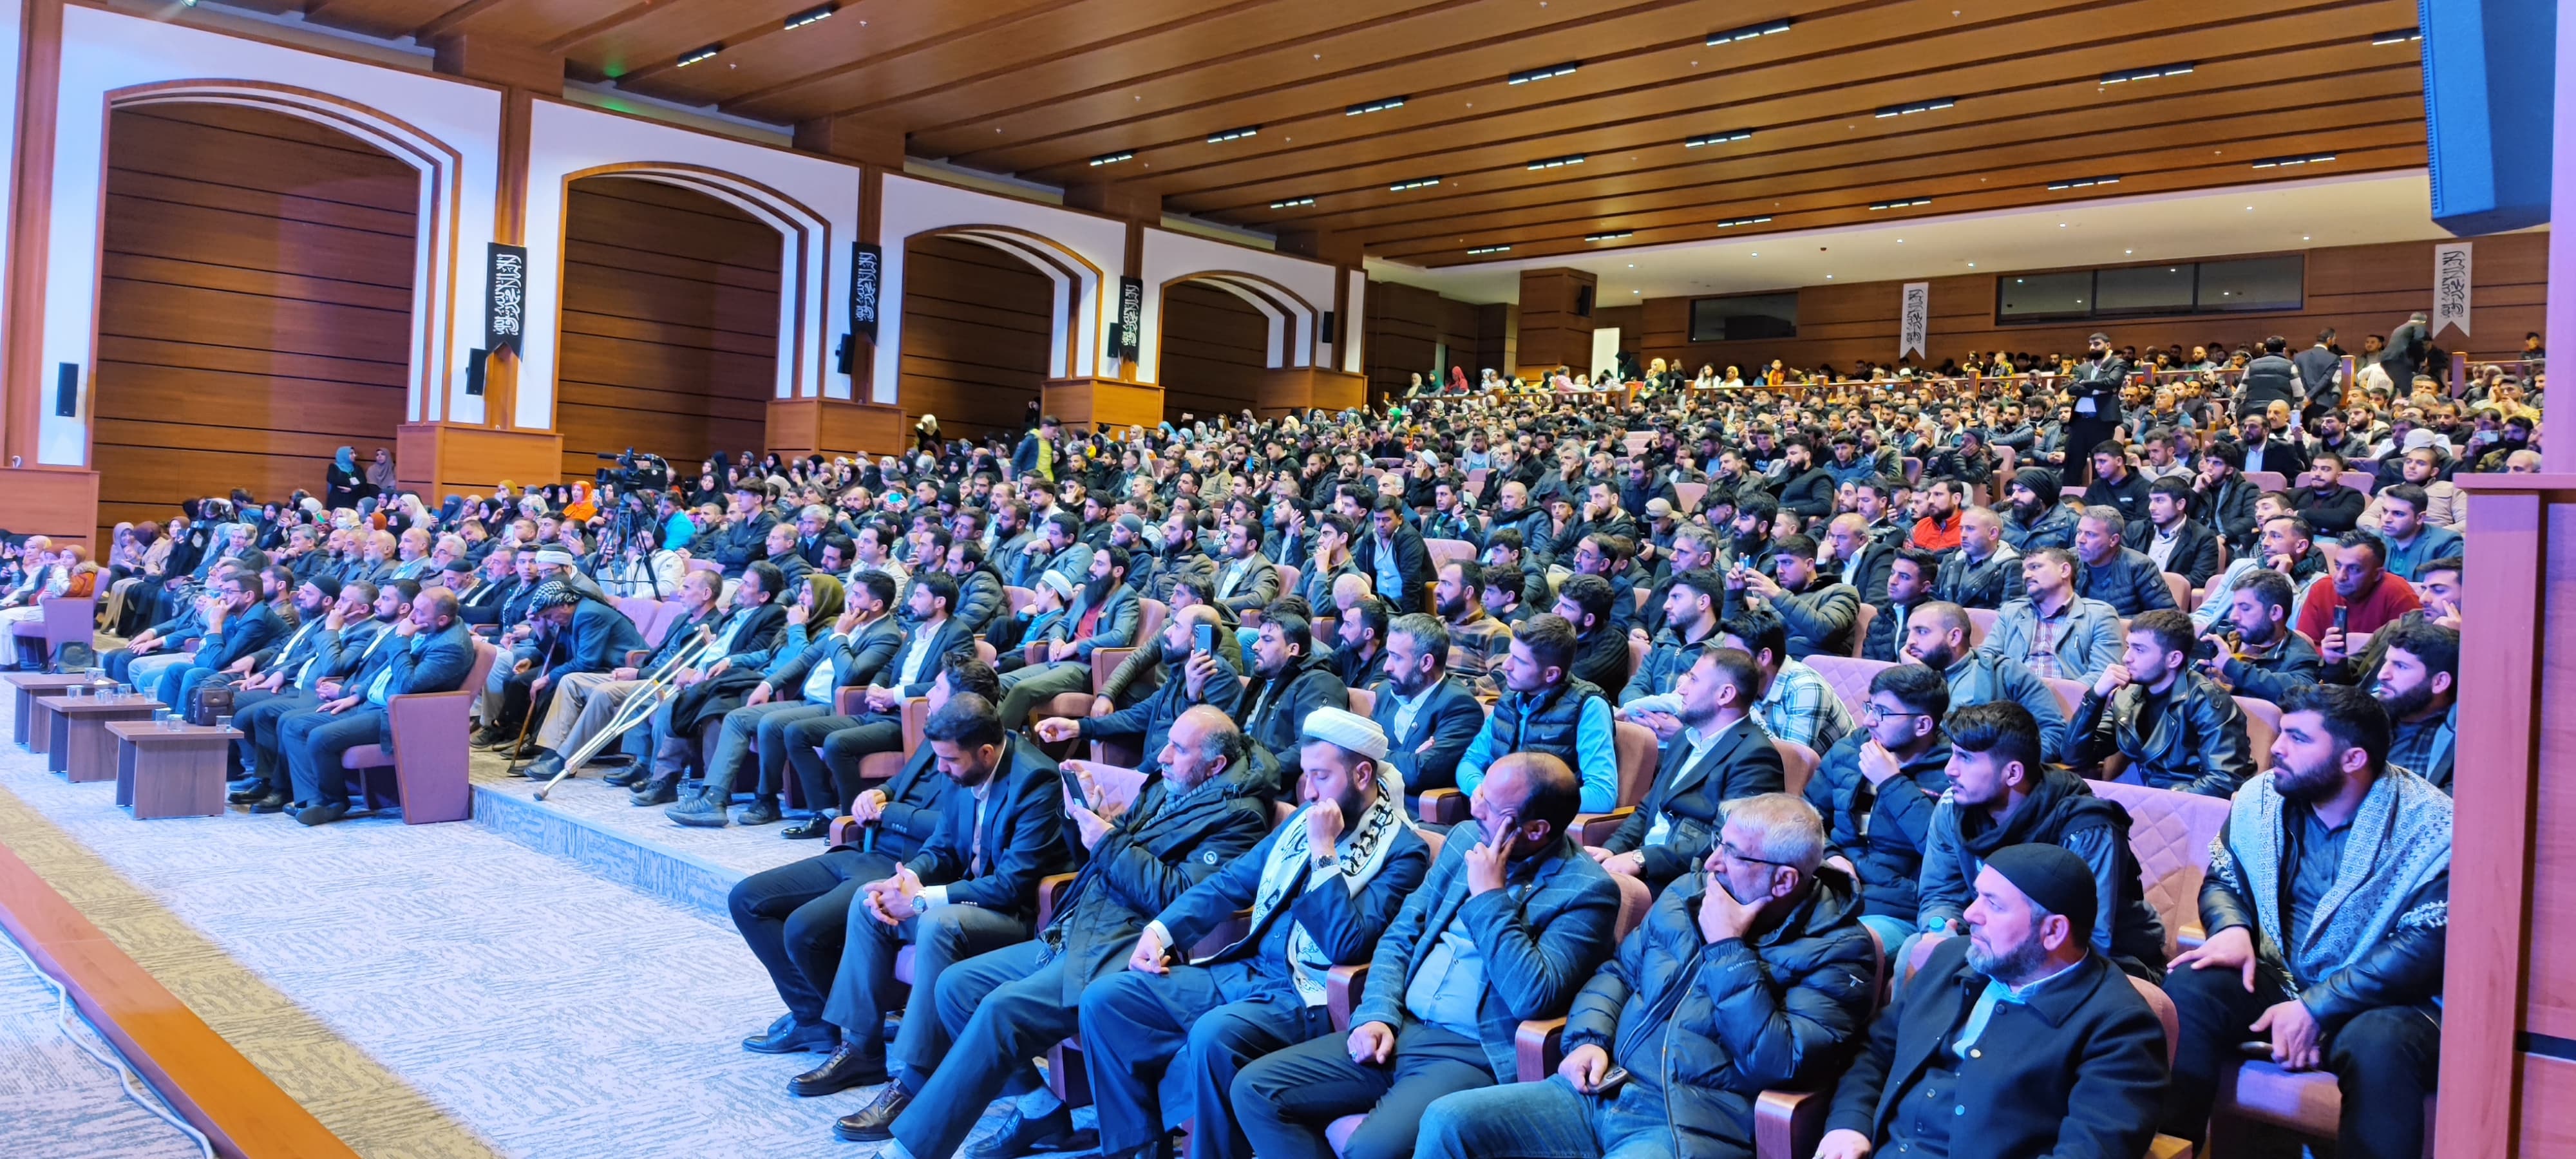 Köklü Değişim, Diyarbakır’da Düzenlediği Konferansta “Hilafet”i Konuştu, Genel-5.jpeg